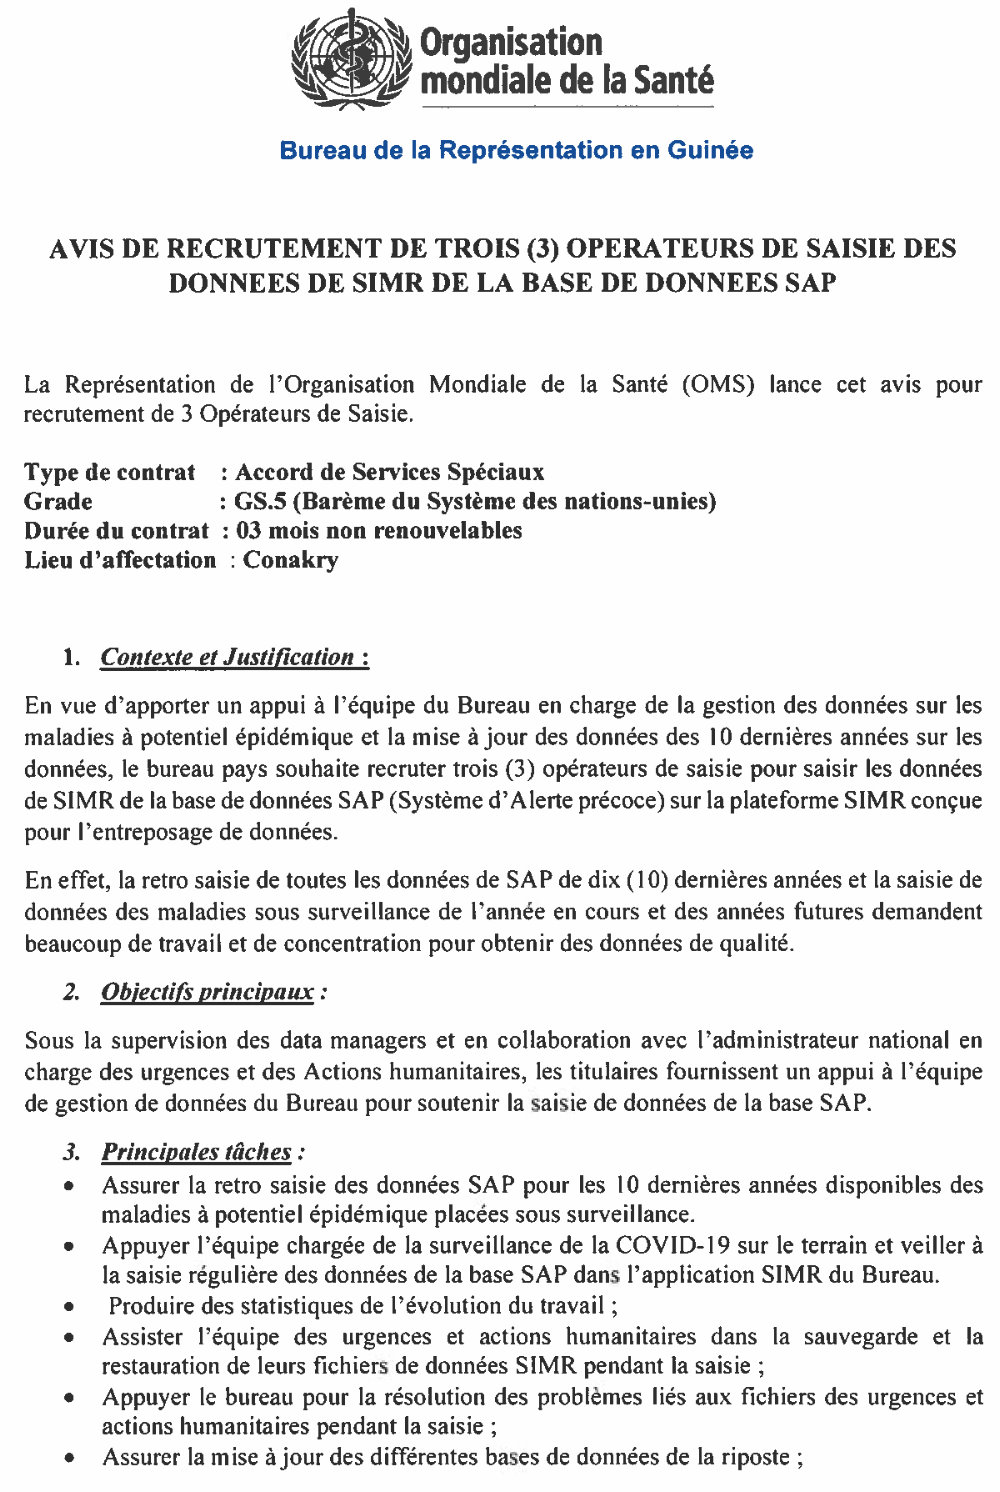 AVIS DE RECRUTEMENT DE TROIS (3) OPERATEURS DE SAISIE DES DONNEES DE SIMR DE LA BASE DE DONNEES SAP  PAGE 1